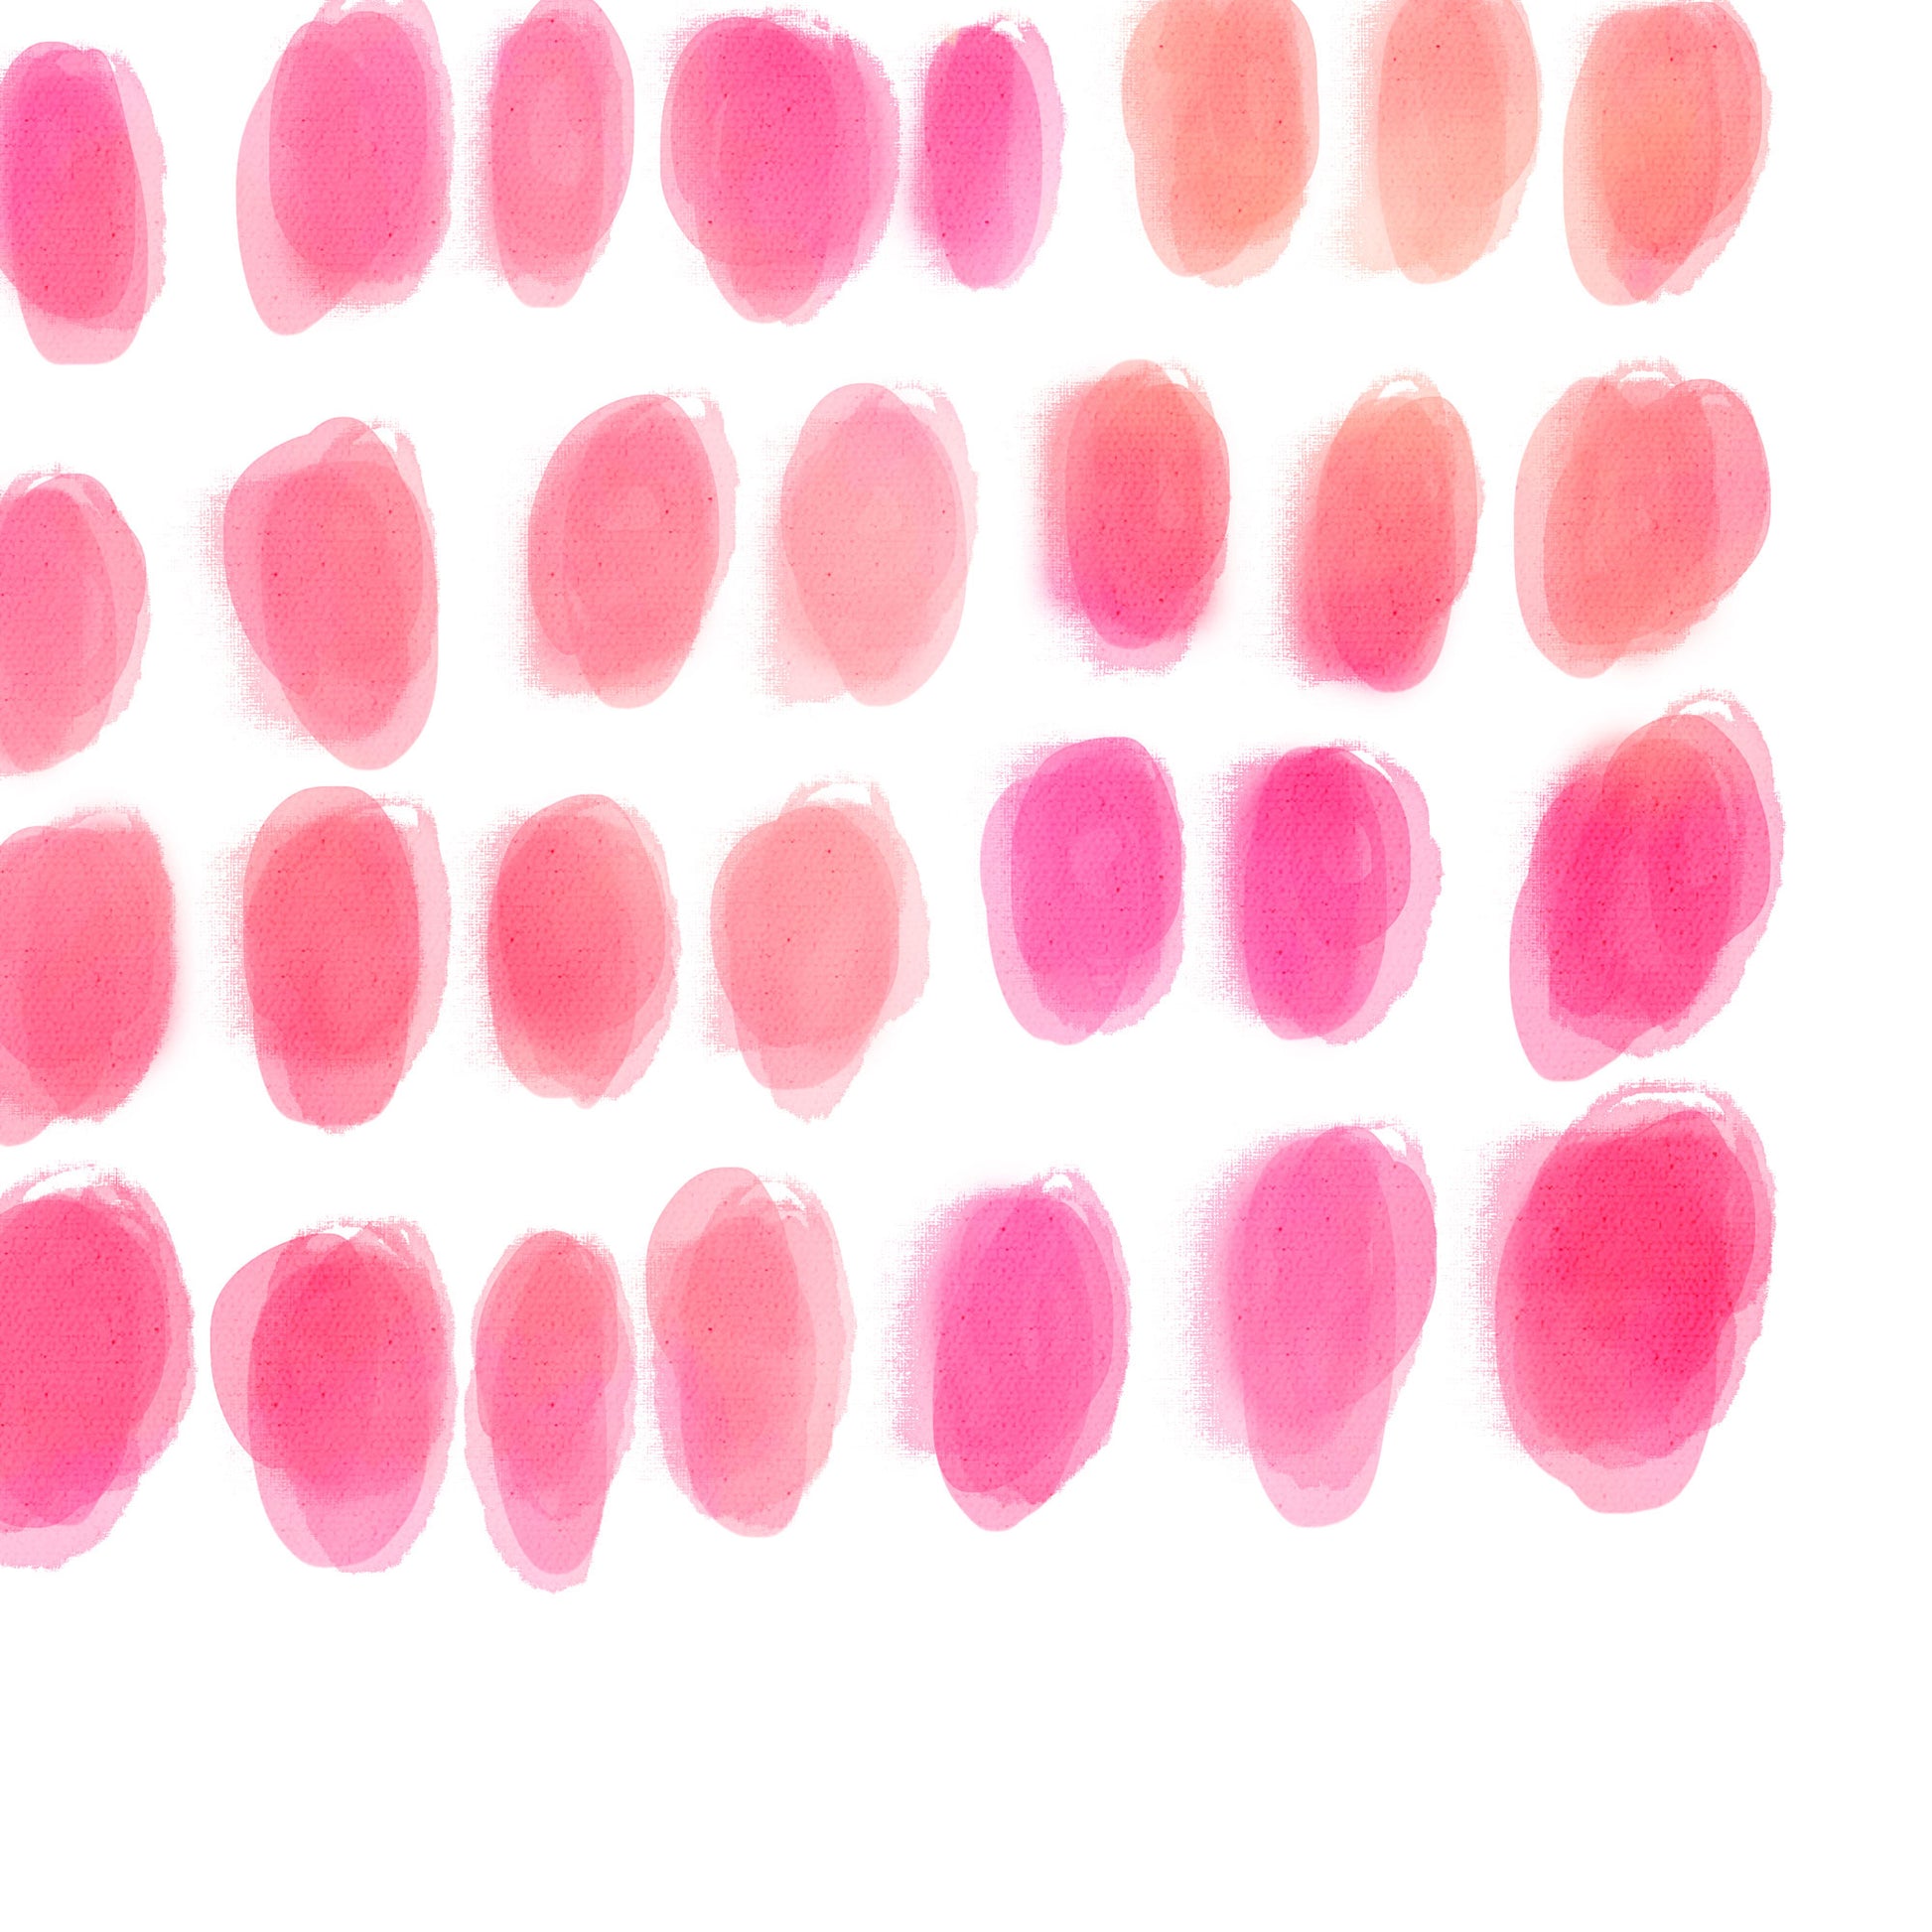 Pink Watercolour Dots Up Close